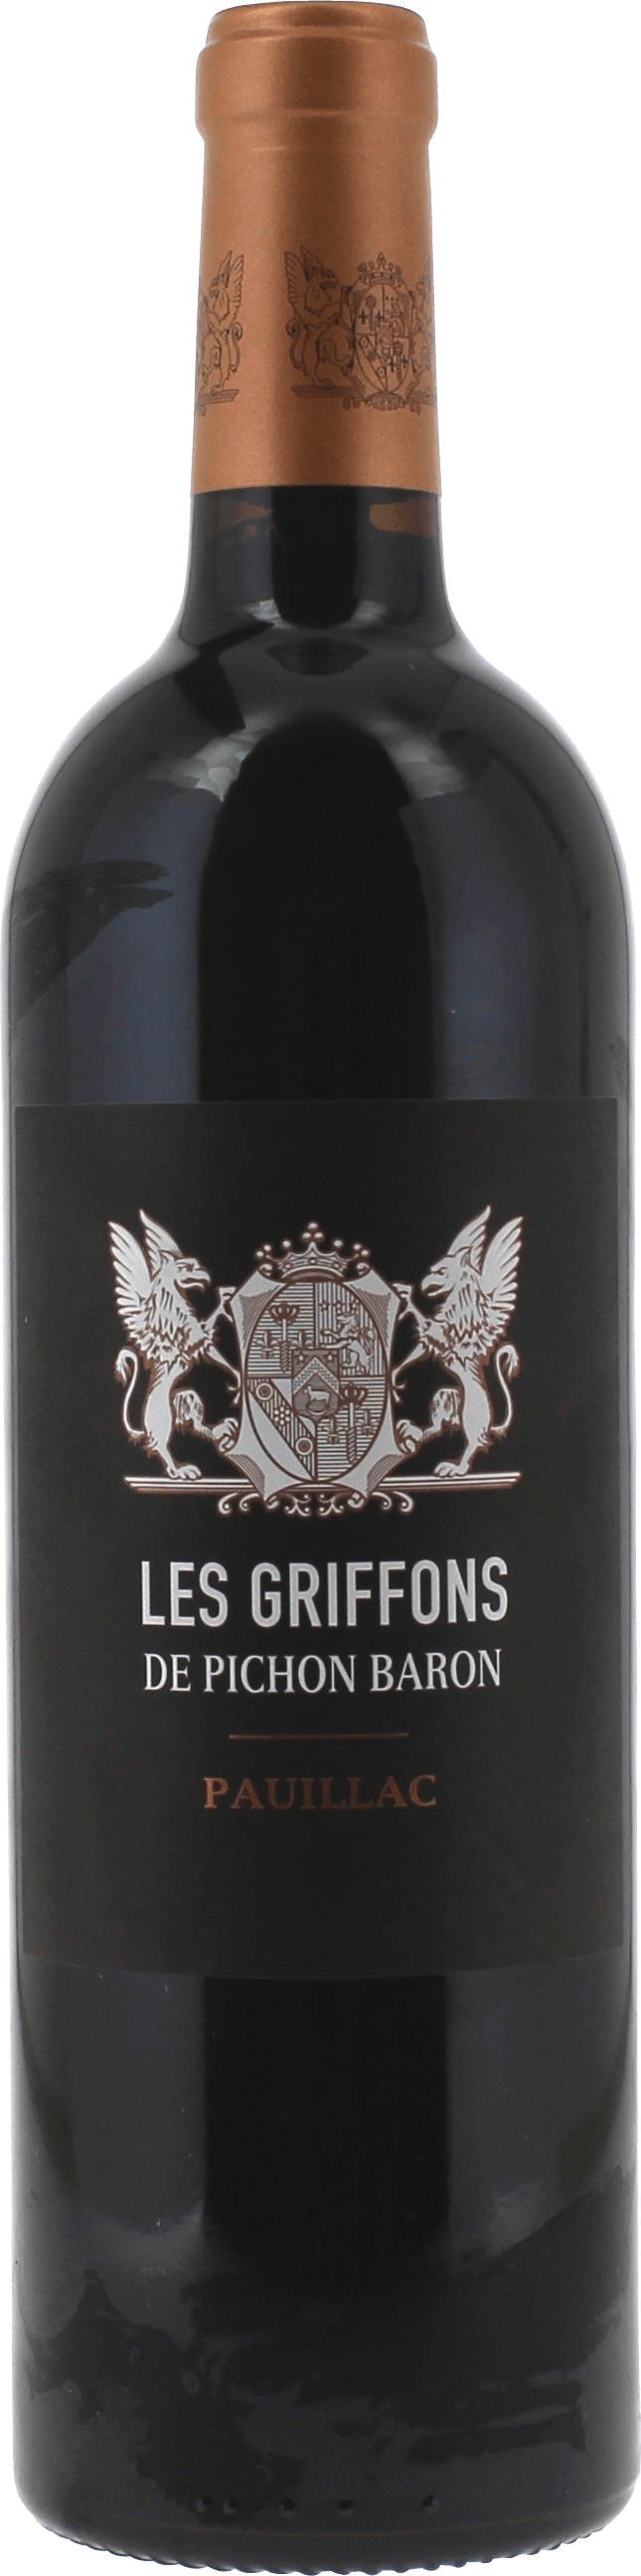 Griffons de pichon baron 2017  Pauillac, Bordeaux rouge